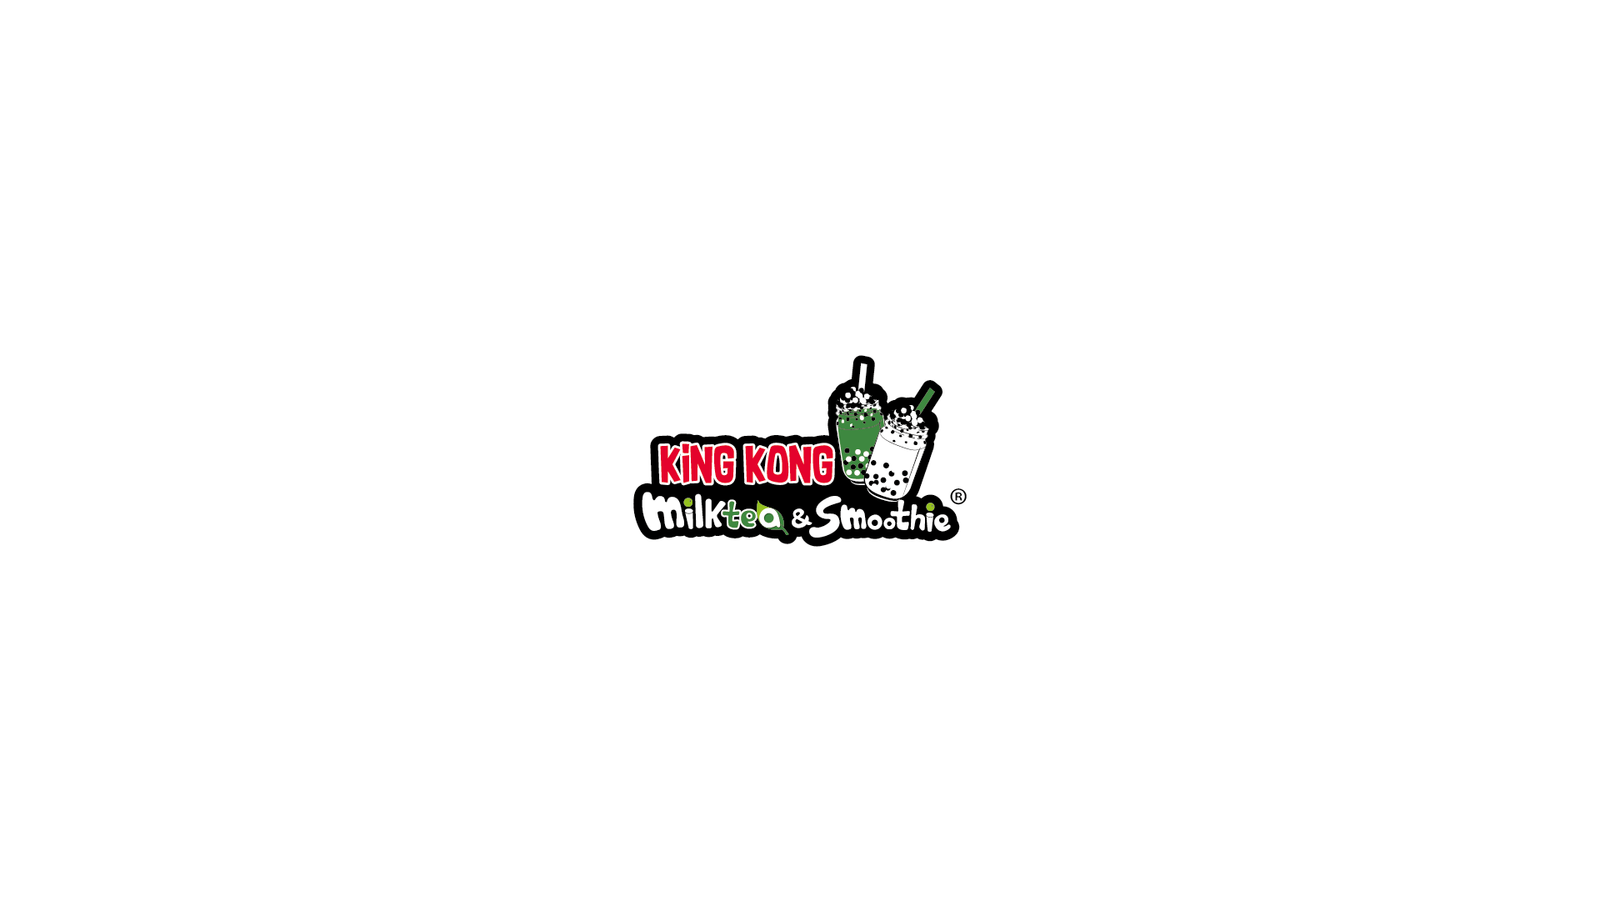 Thiết kế Logo, Logo King Kong, Logo King Kong Milktea &Smoothie, King Kong Milk Tea & Smoothie